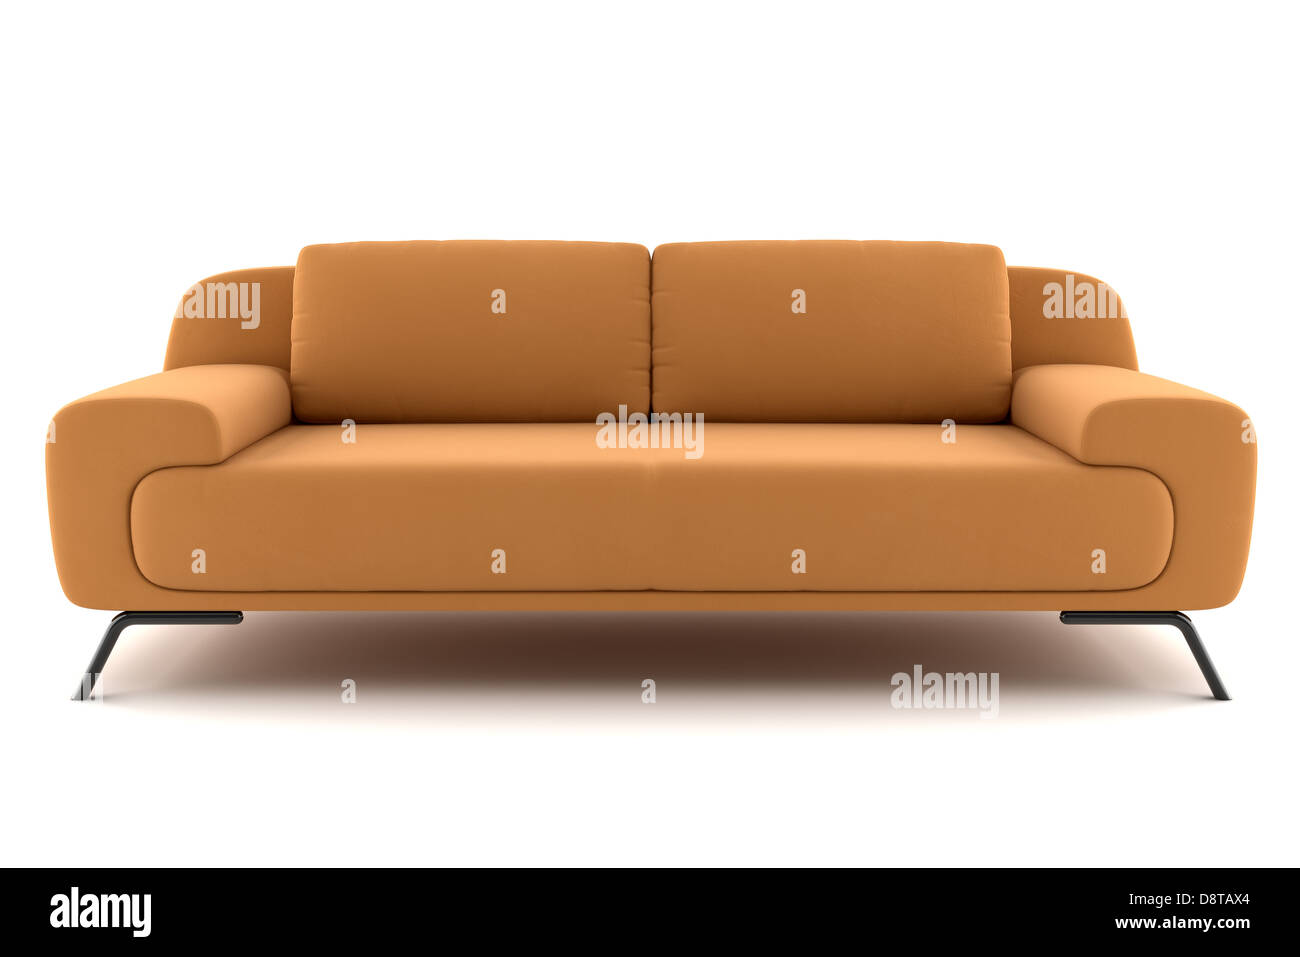 orange sofa isolated on white background Stock Photo